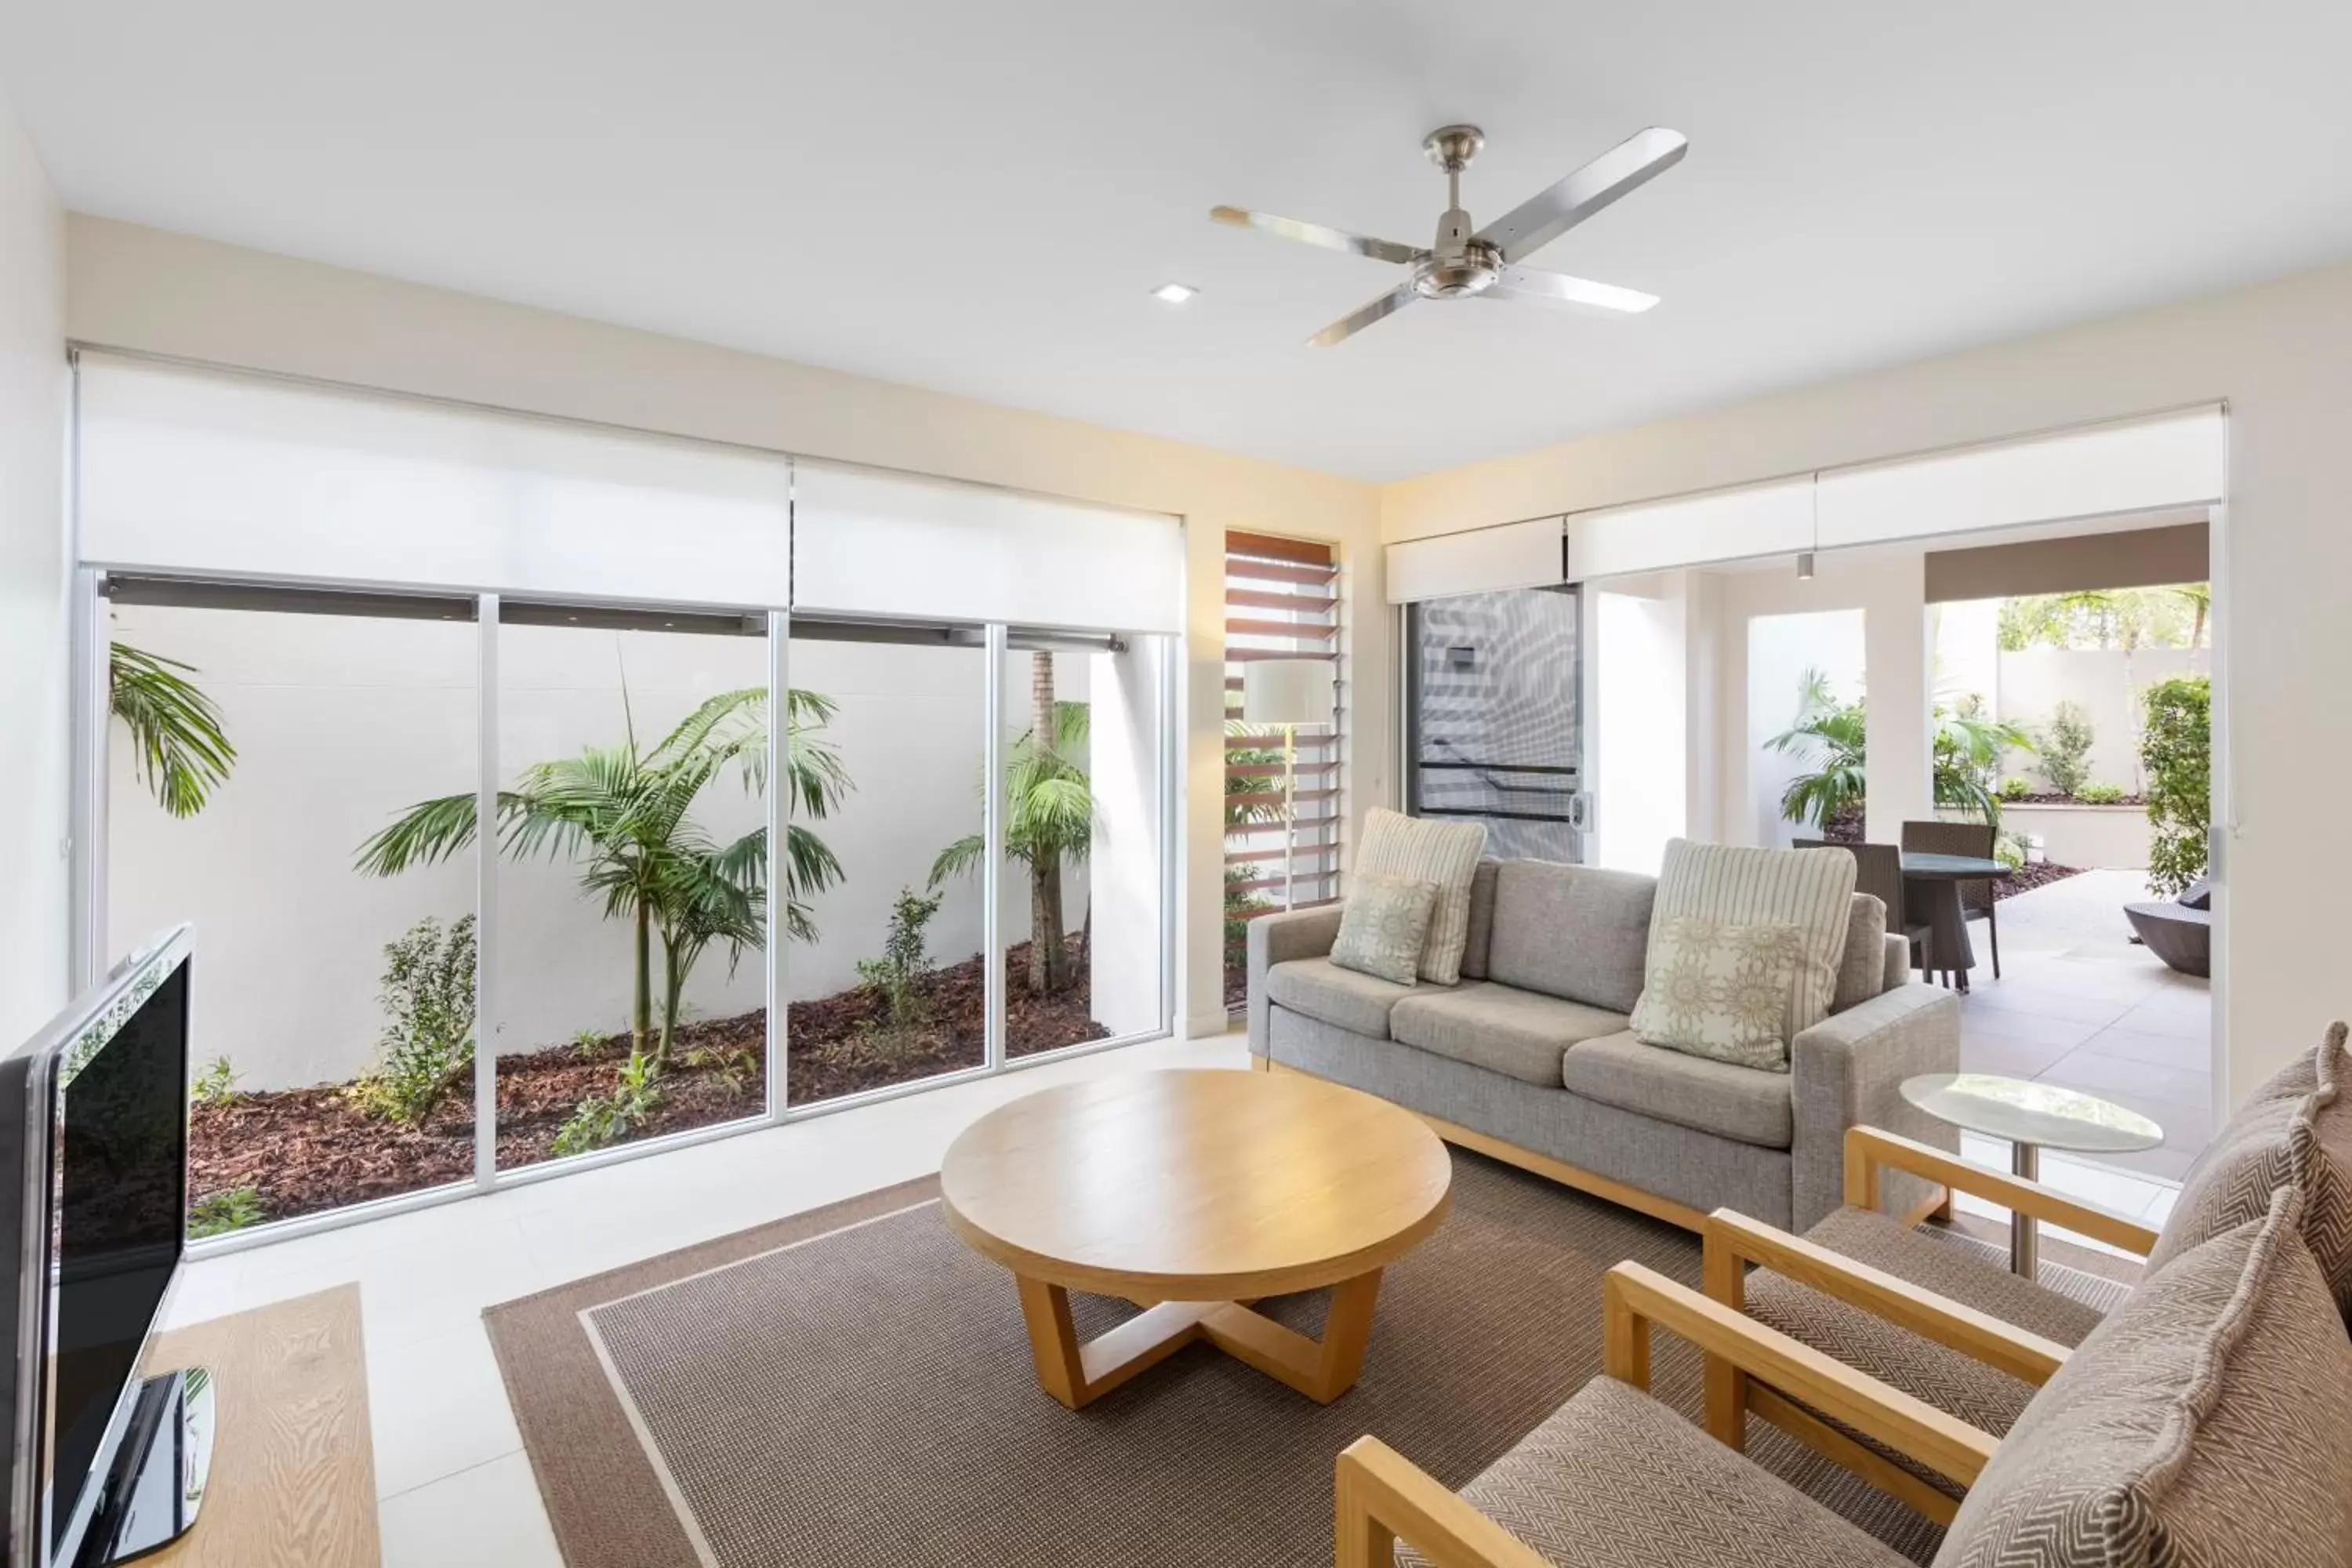 Living room in RACV Noosa Resort